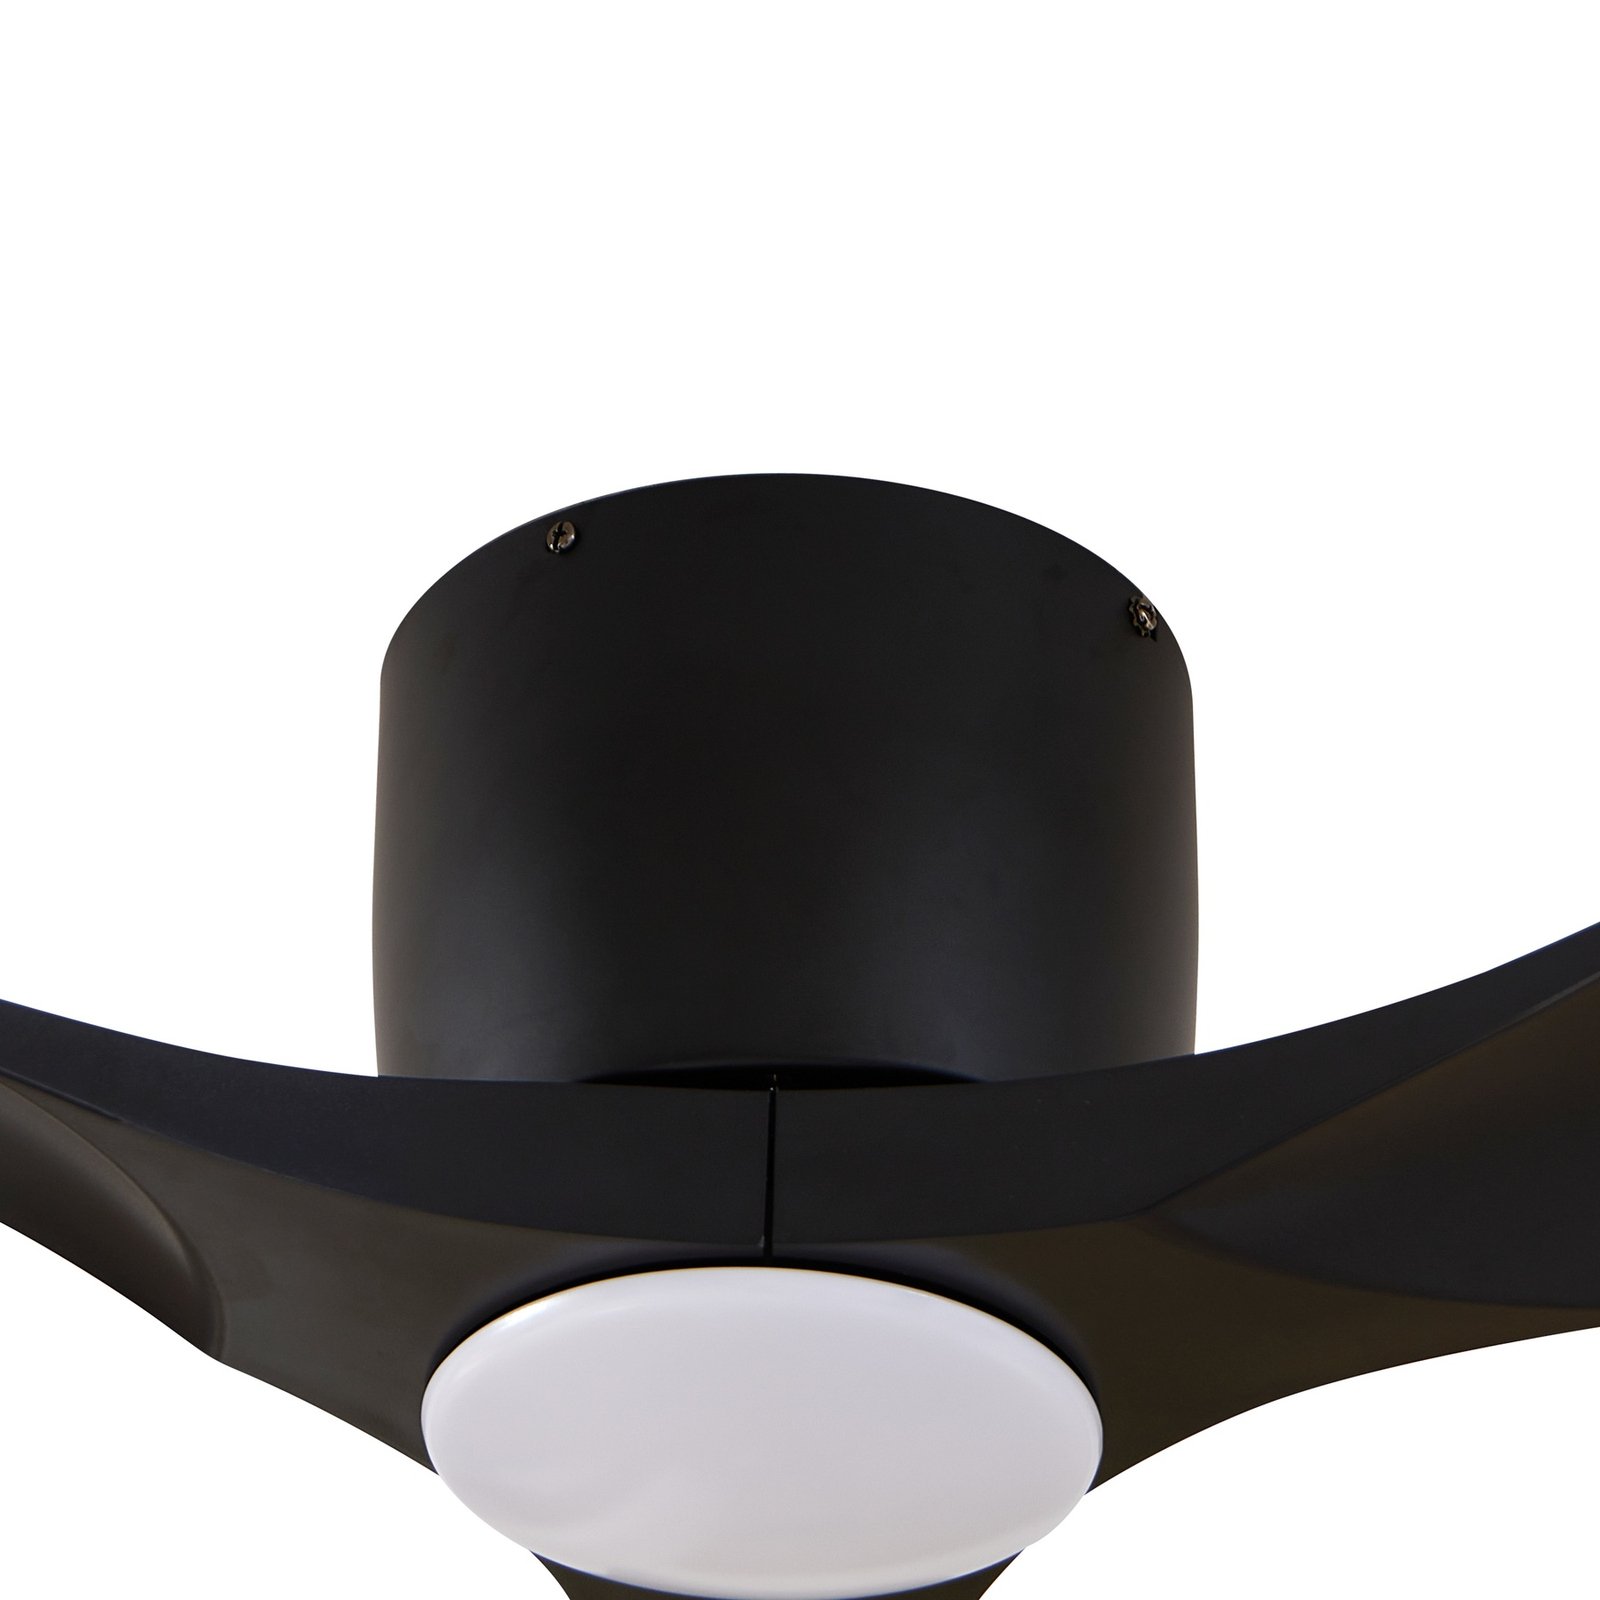 Lucande LED ceiling fan Moneno, black, DC, quiet